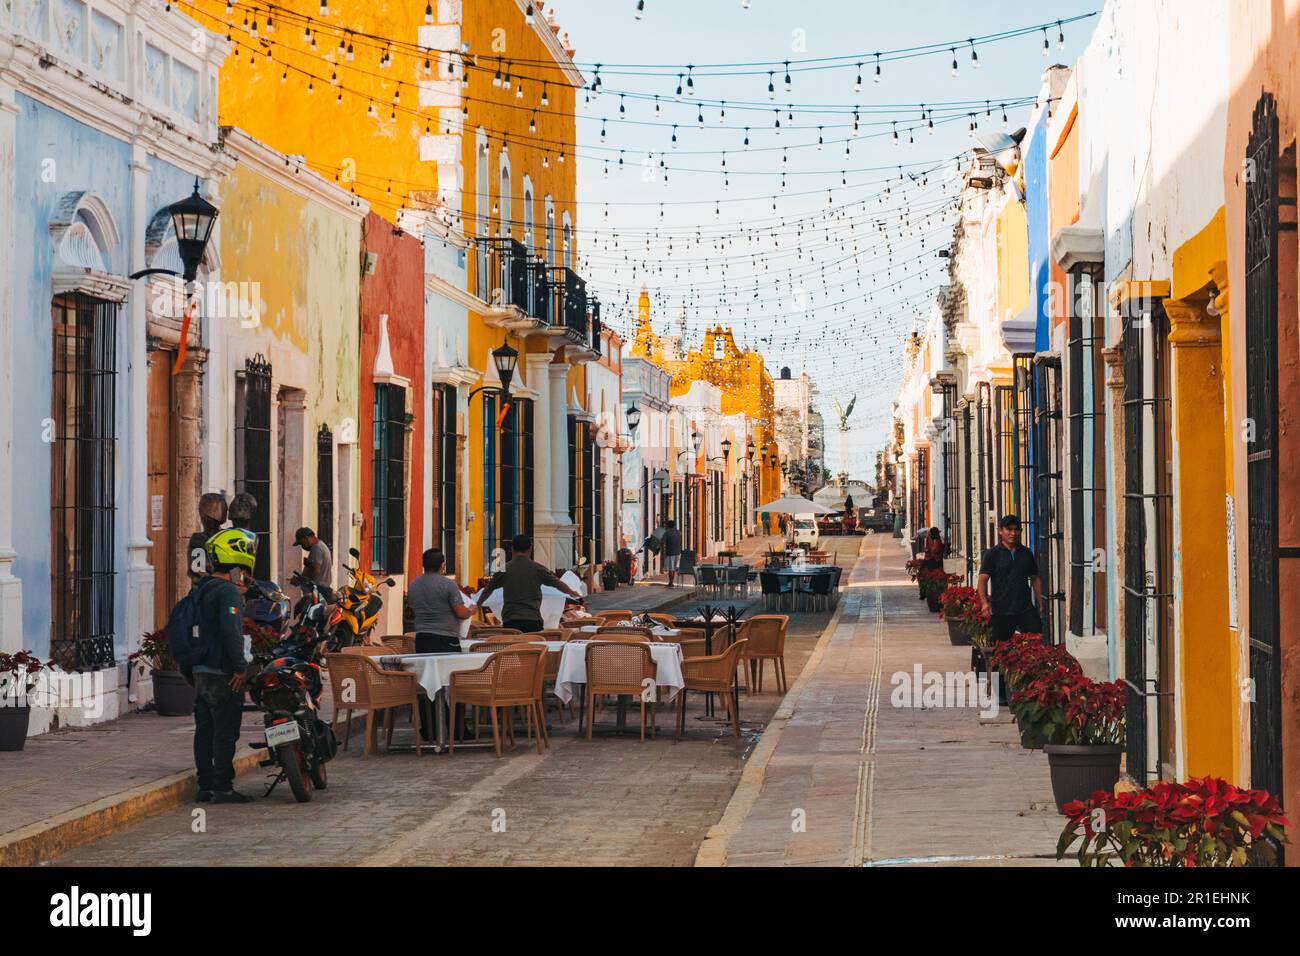 Des bâtiments aux couleurs vives entourent les tables à manger de la Calle 59, une rue populaire pour les restaurants et la vie nocturne dans la ville de Campeche, au Mexique Banque D'Images